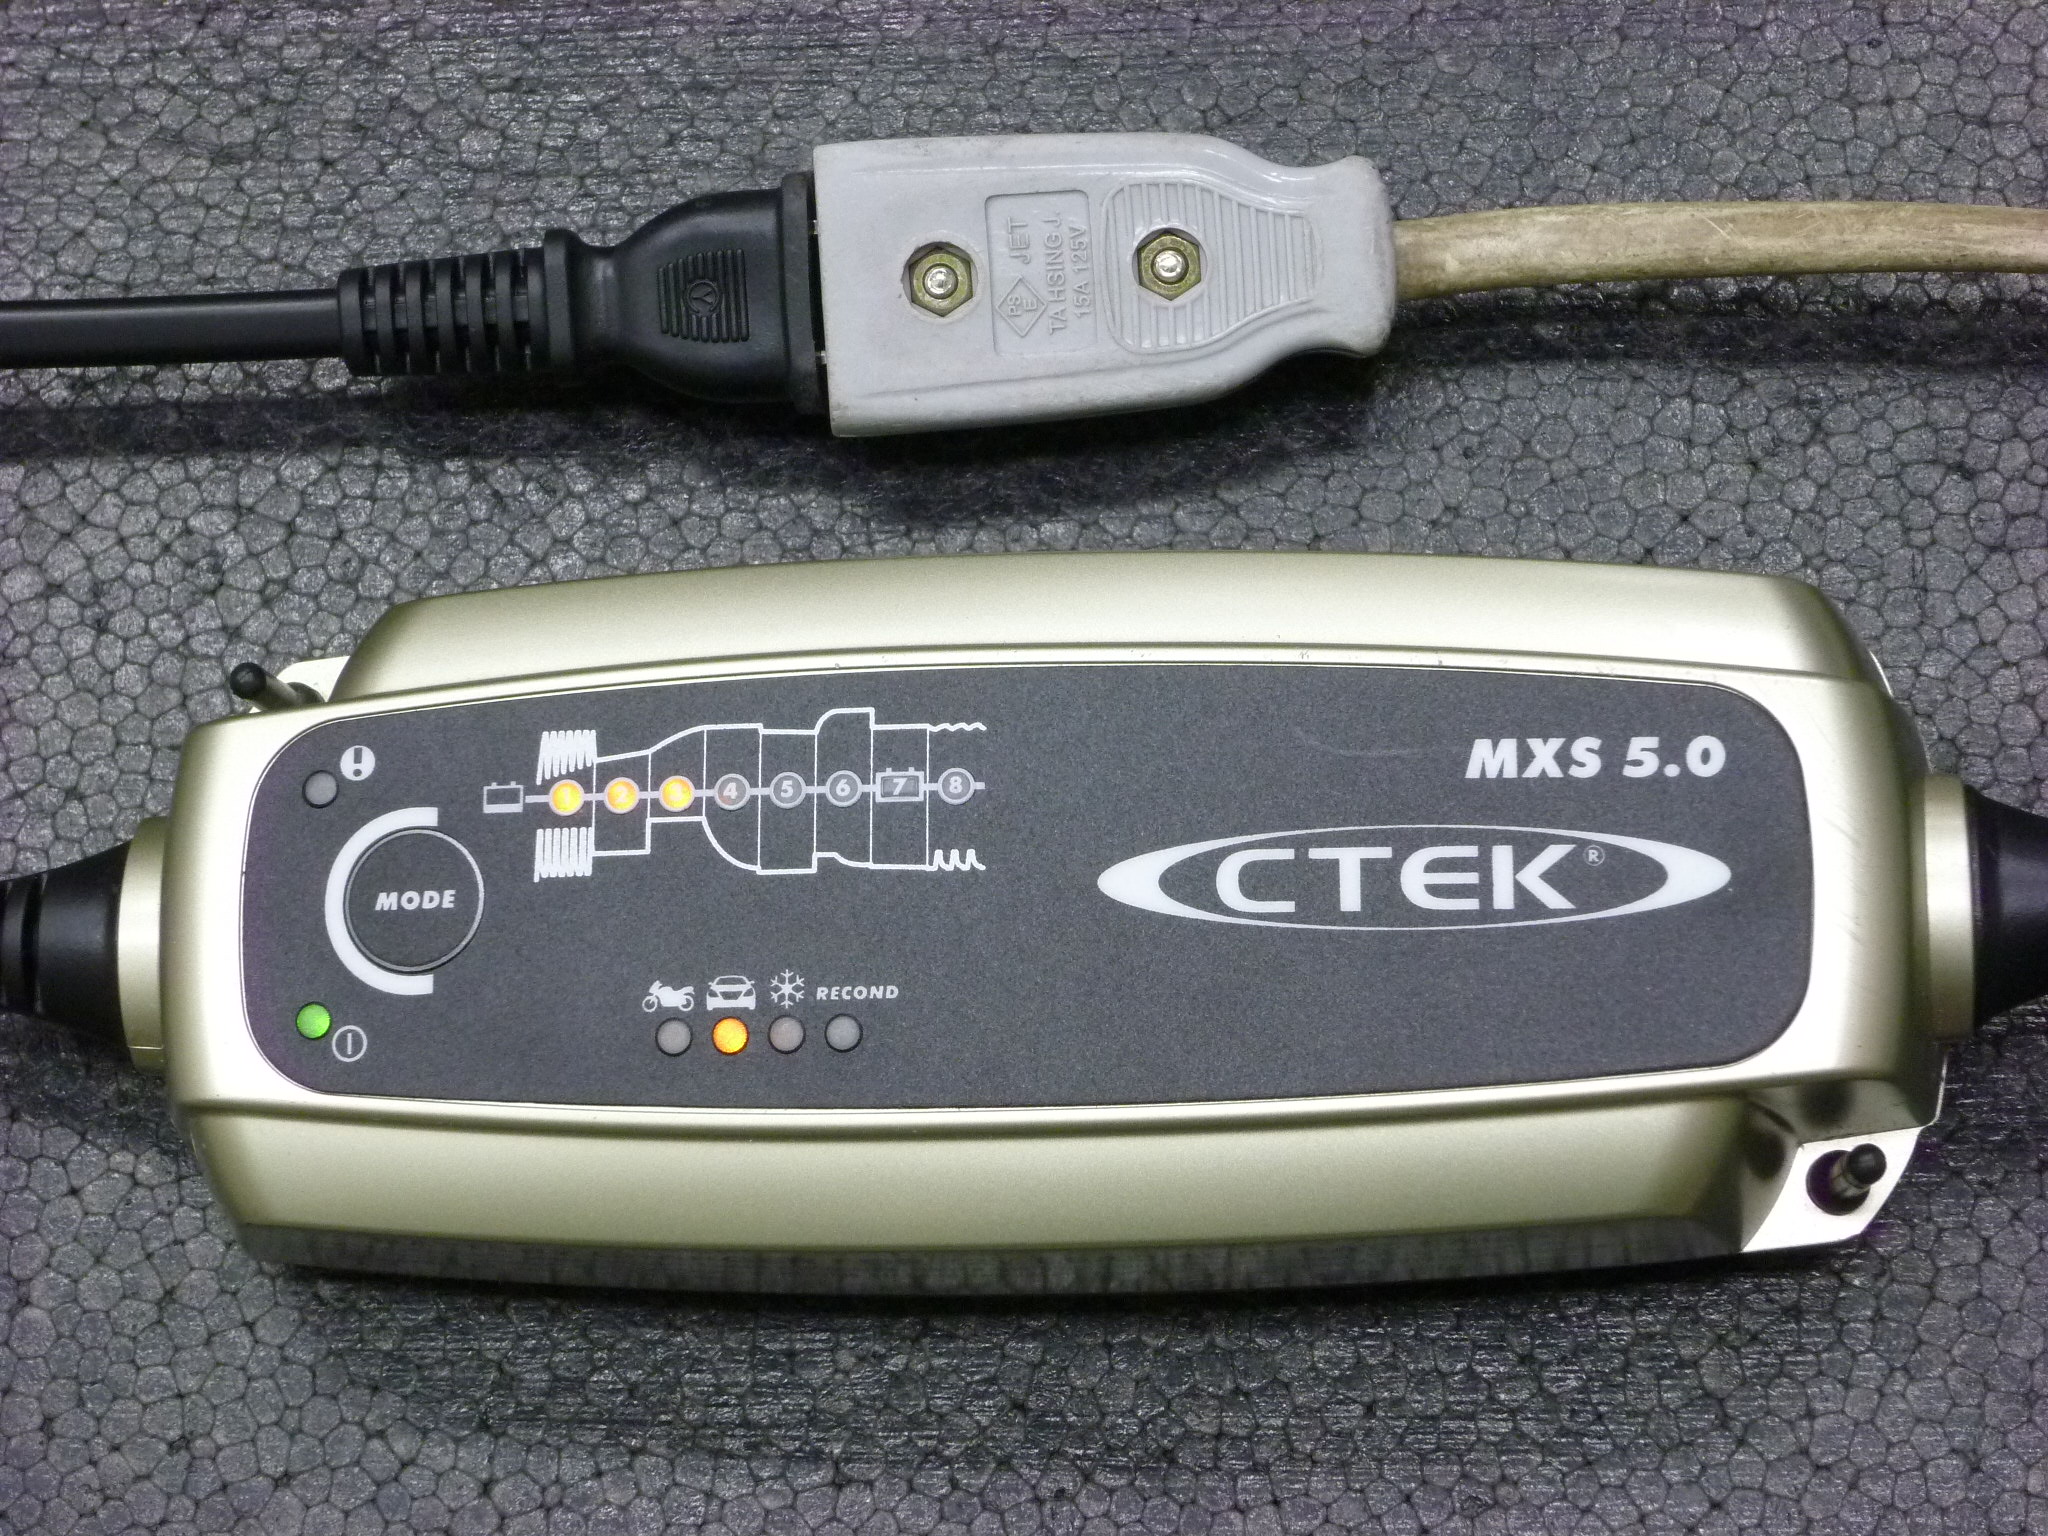 Ctek はバッテリー上がりの防止装置 家庭用電源で使える充電器の使い方は超簡単